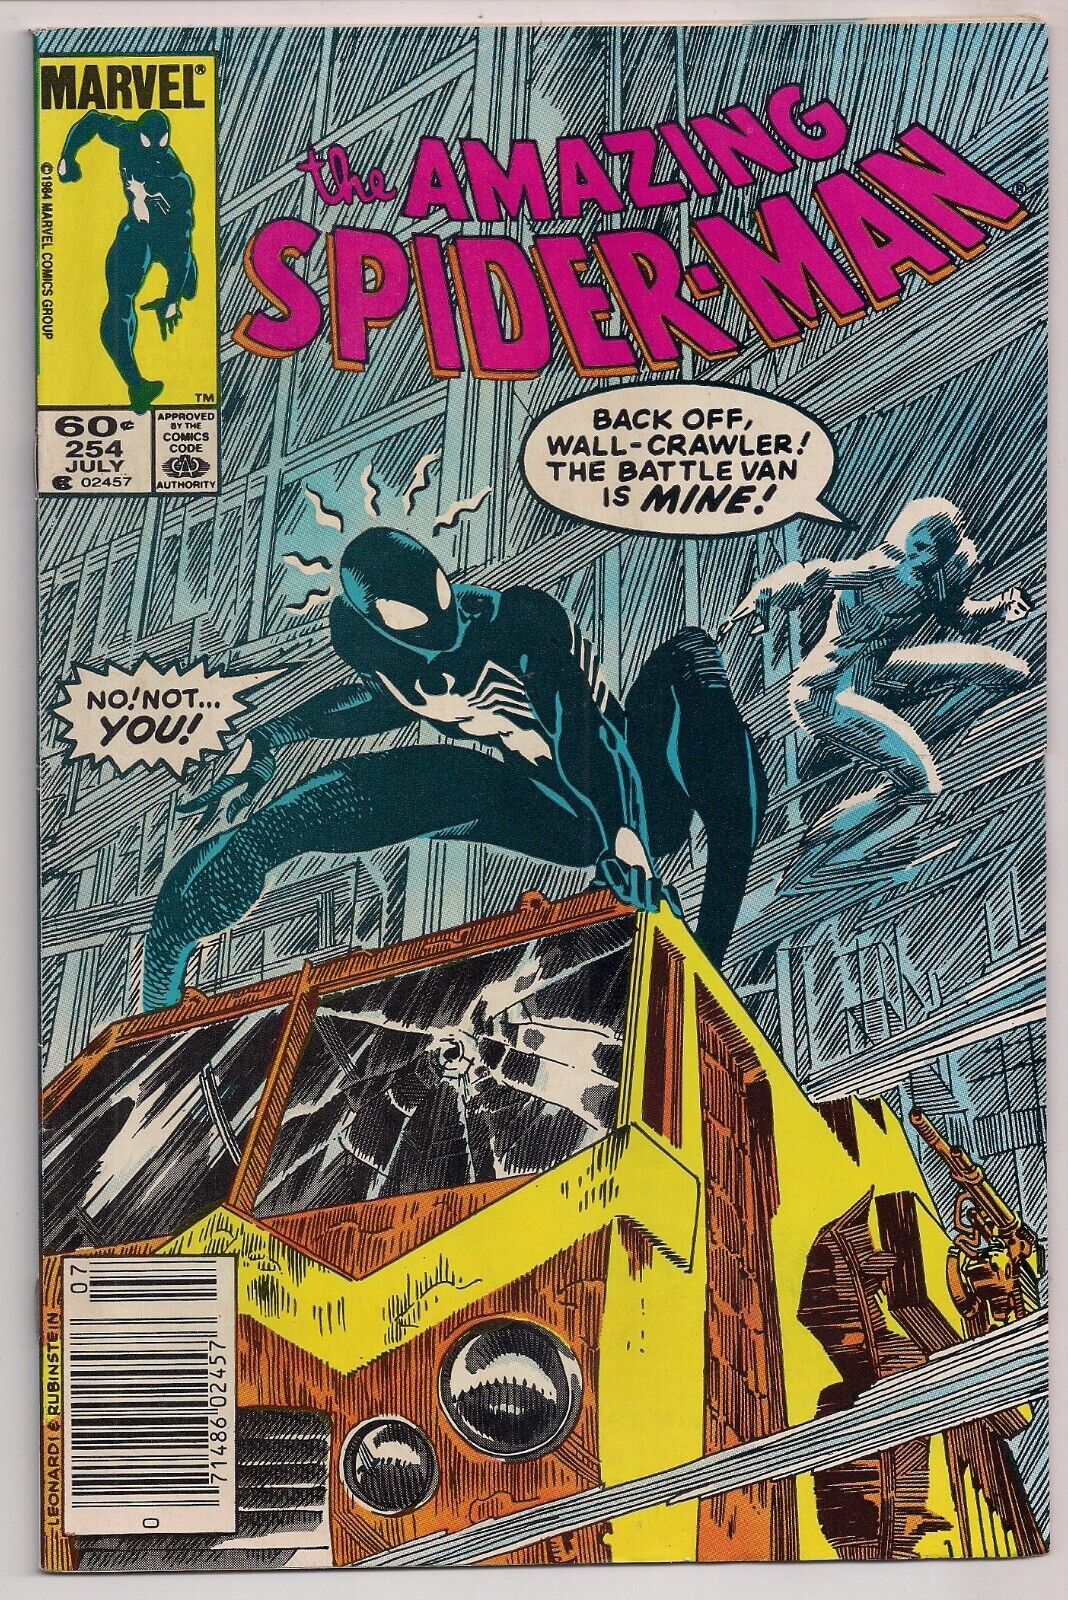 Amazing Spider-Man #254 Marvel 1984 VF-7.5